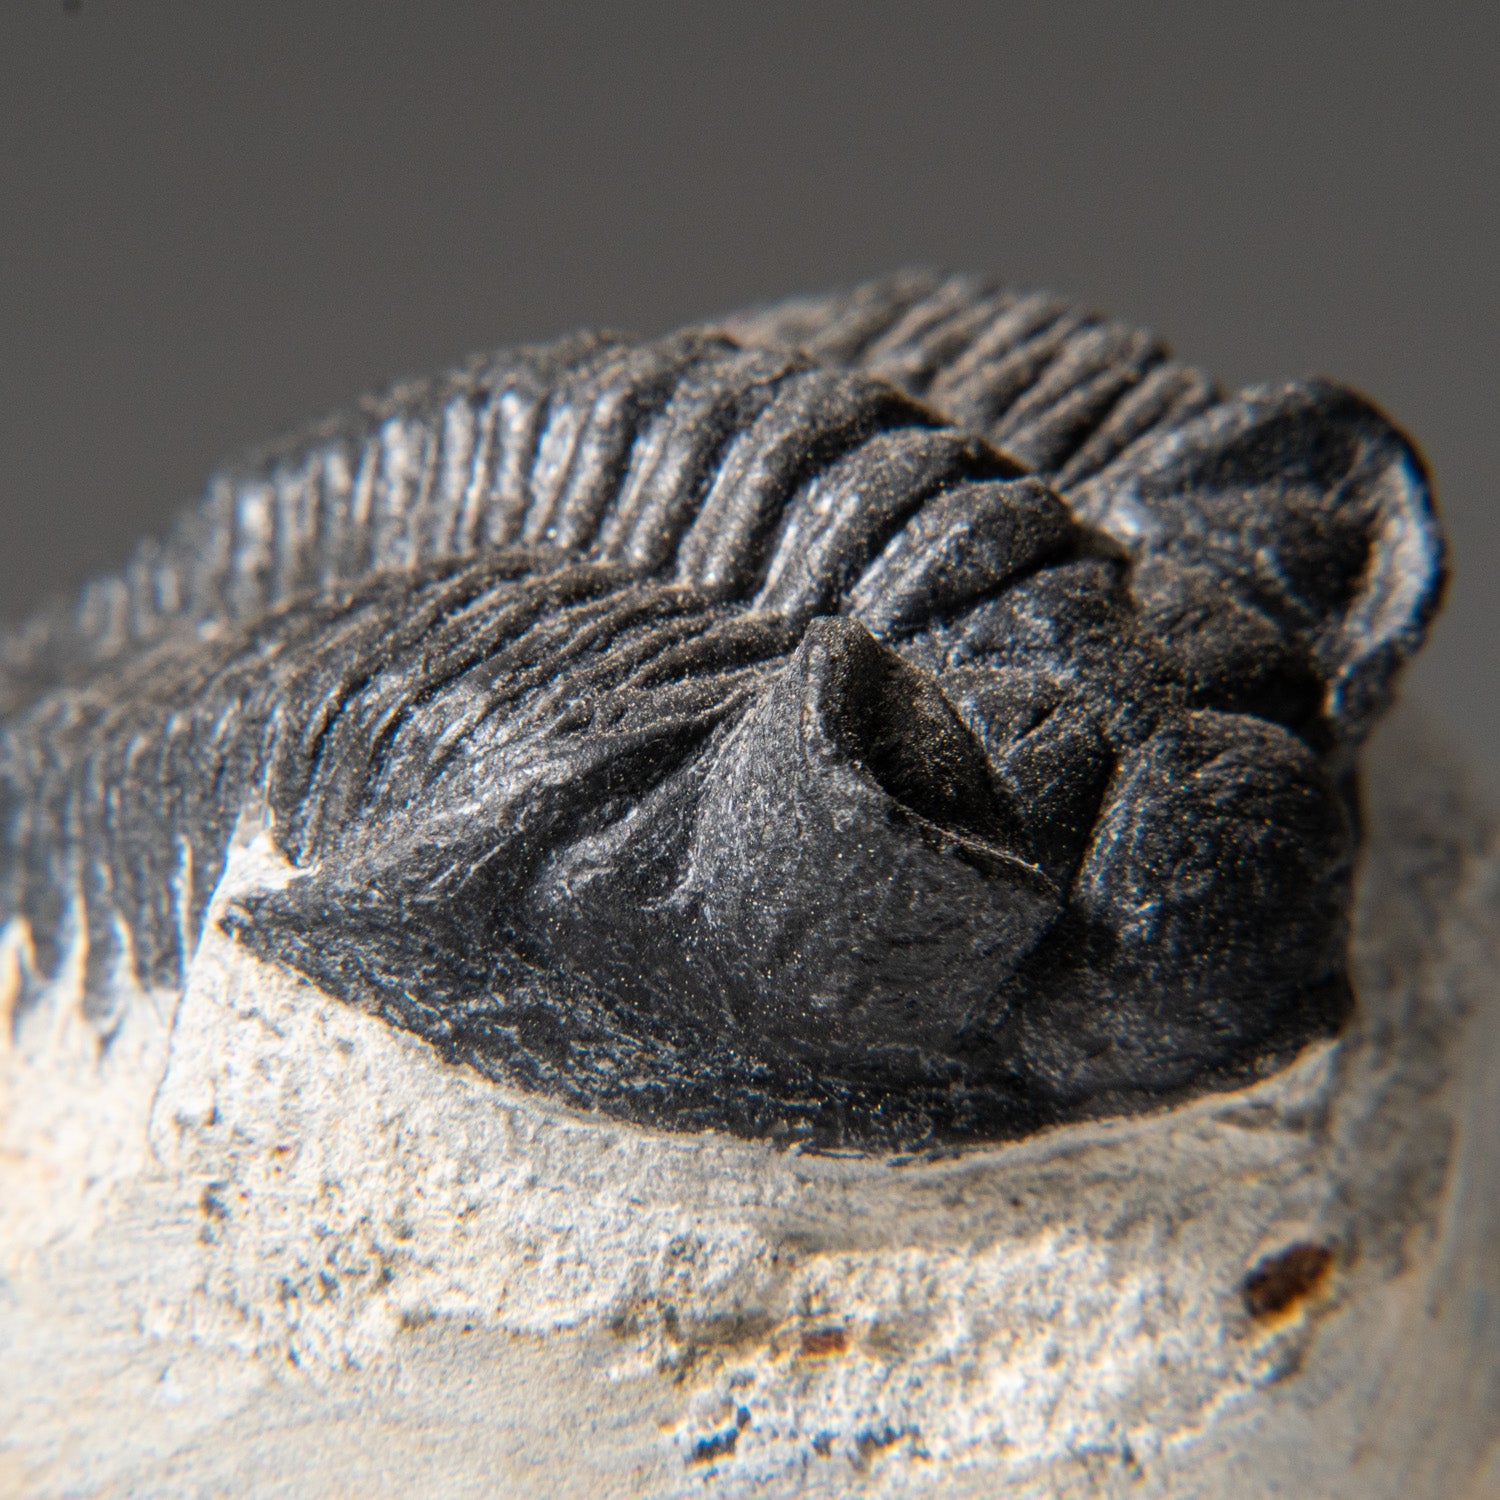 Genuine Trilobite Fossil (Ptychopariida) on Matrix (184.4 grams)